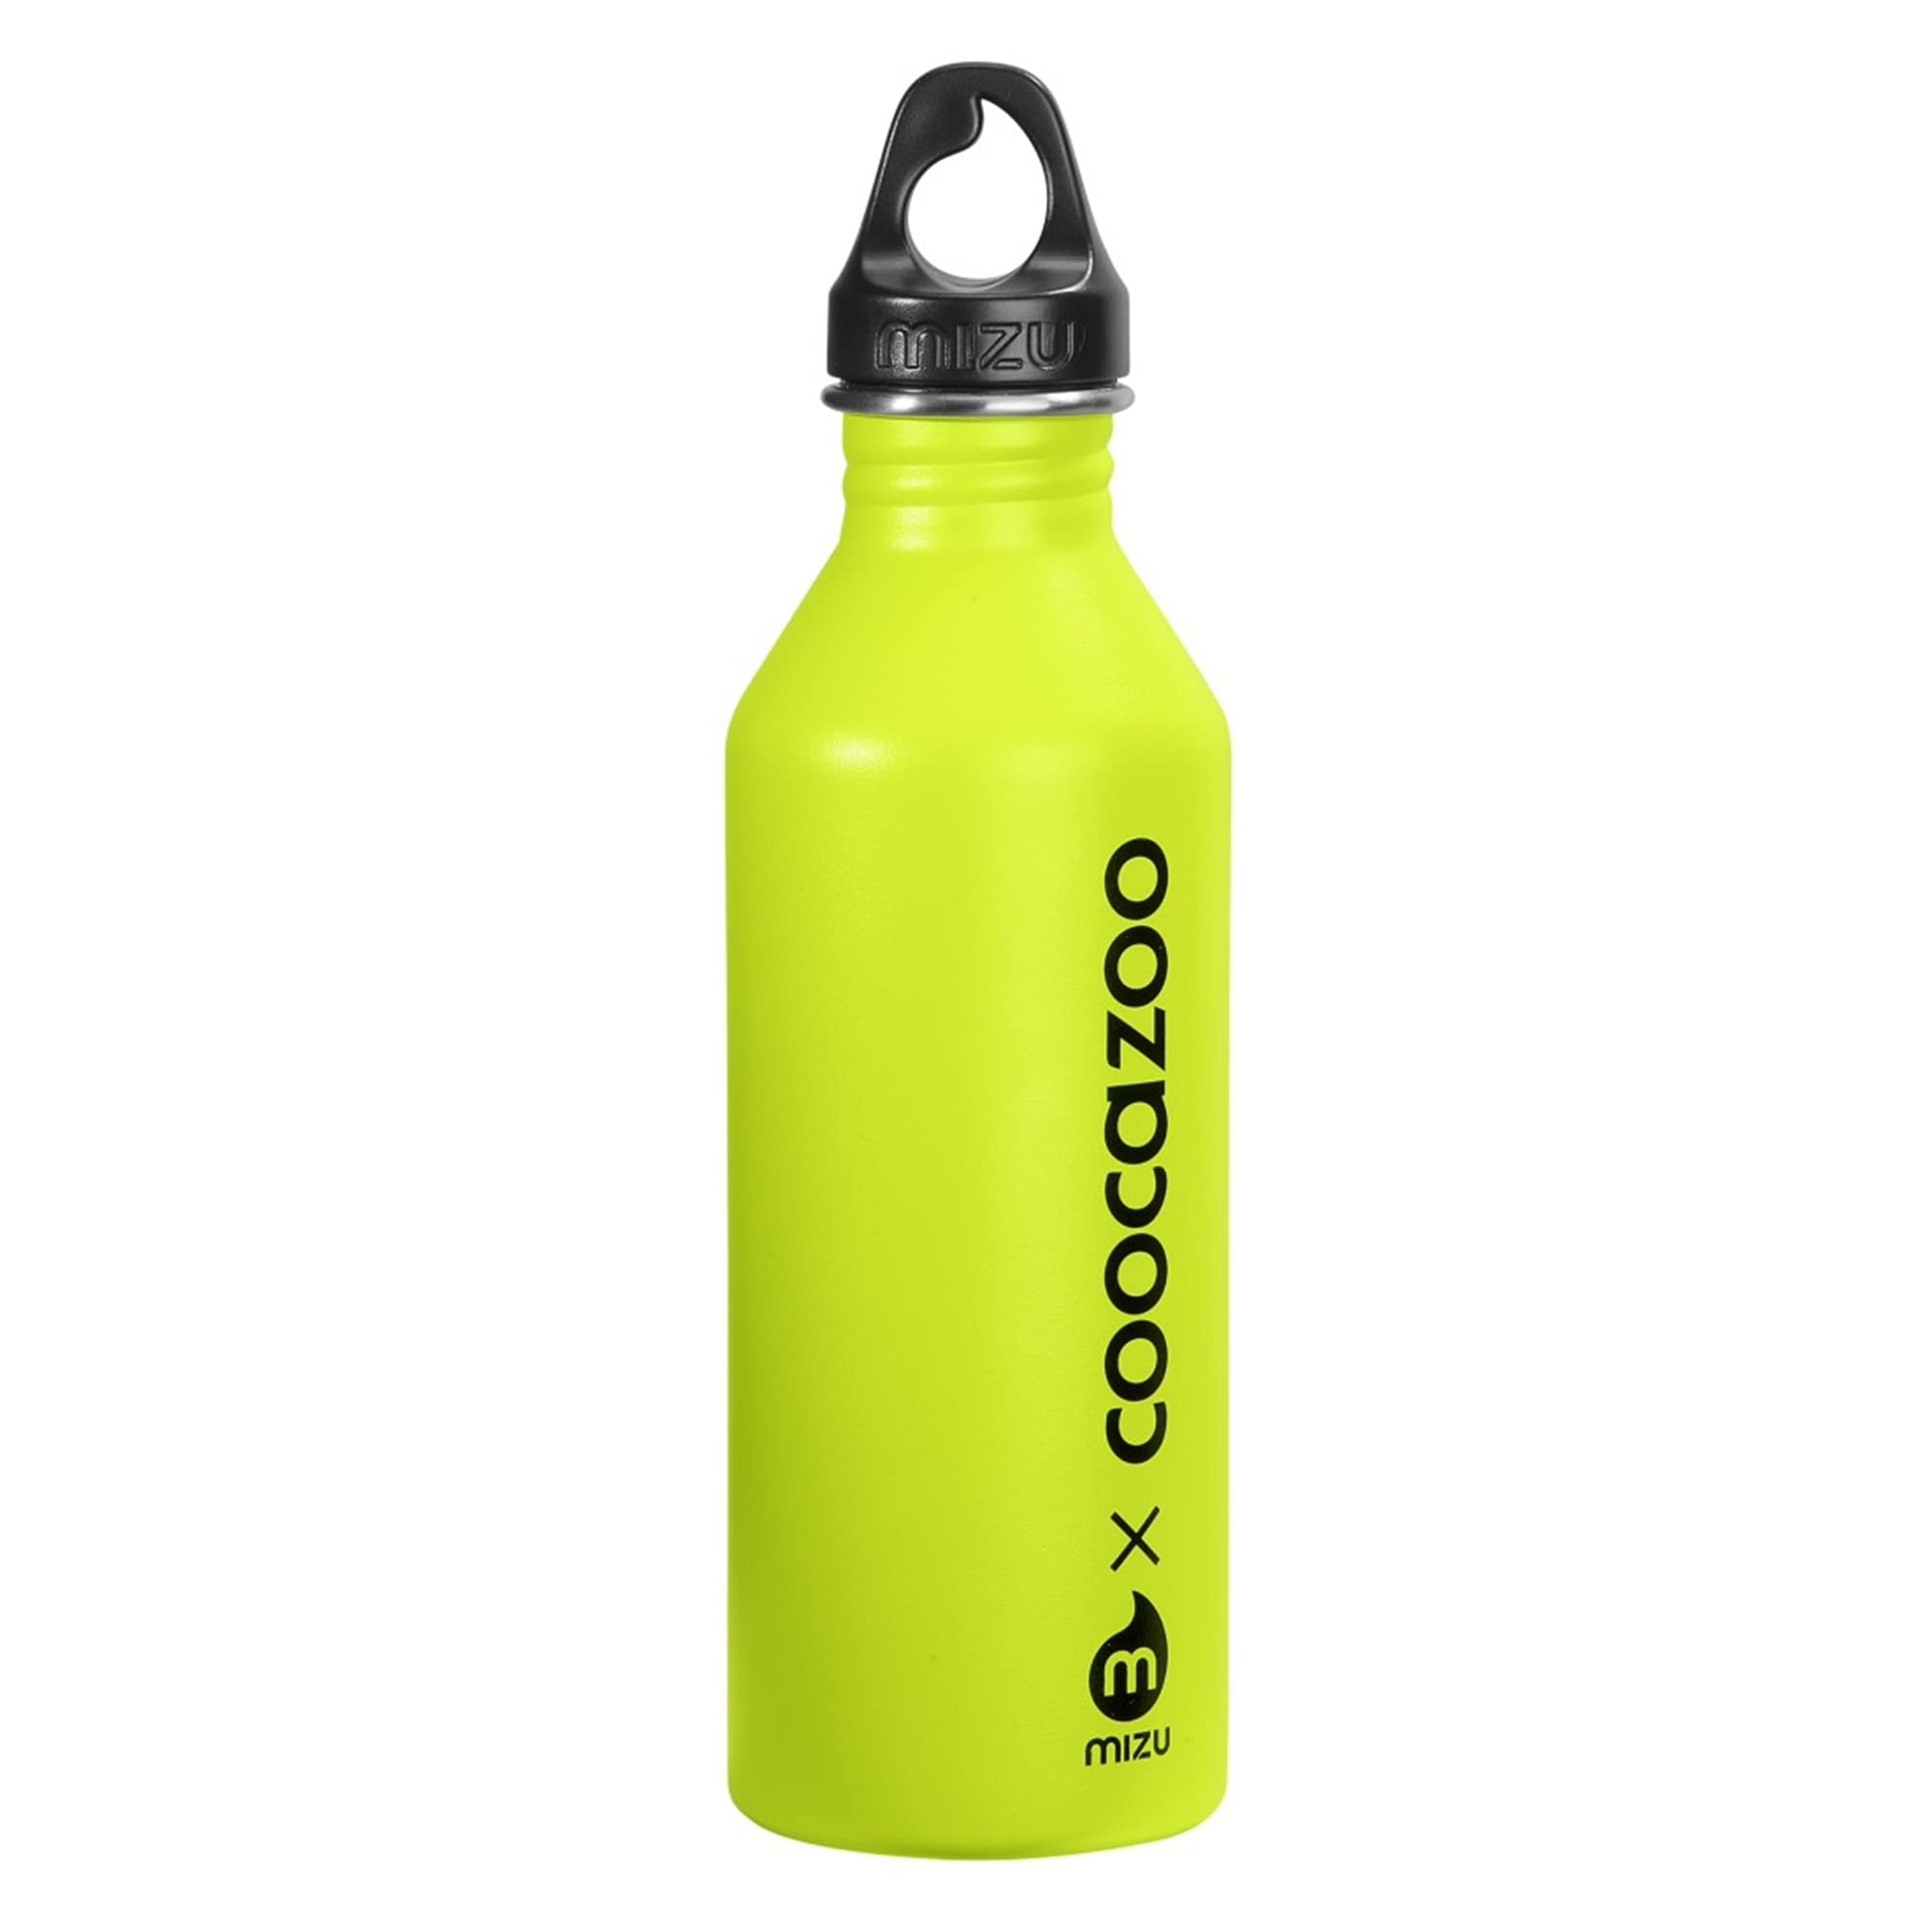 Coocazoo Edelstahl-Trinkflasche, Lime, Drehverschluss, aus Edelstahl, ohne Weichmacher, geschmacksneutral, für kohlensäurehaltige Getränke geeignet, recyclebar, 0,75L